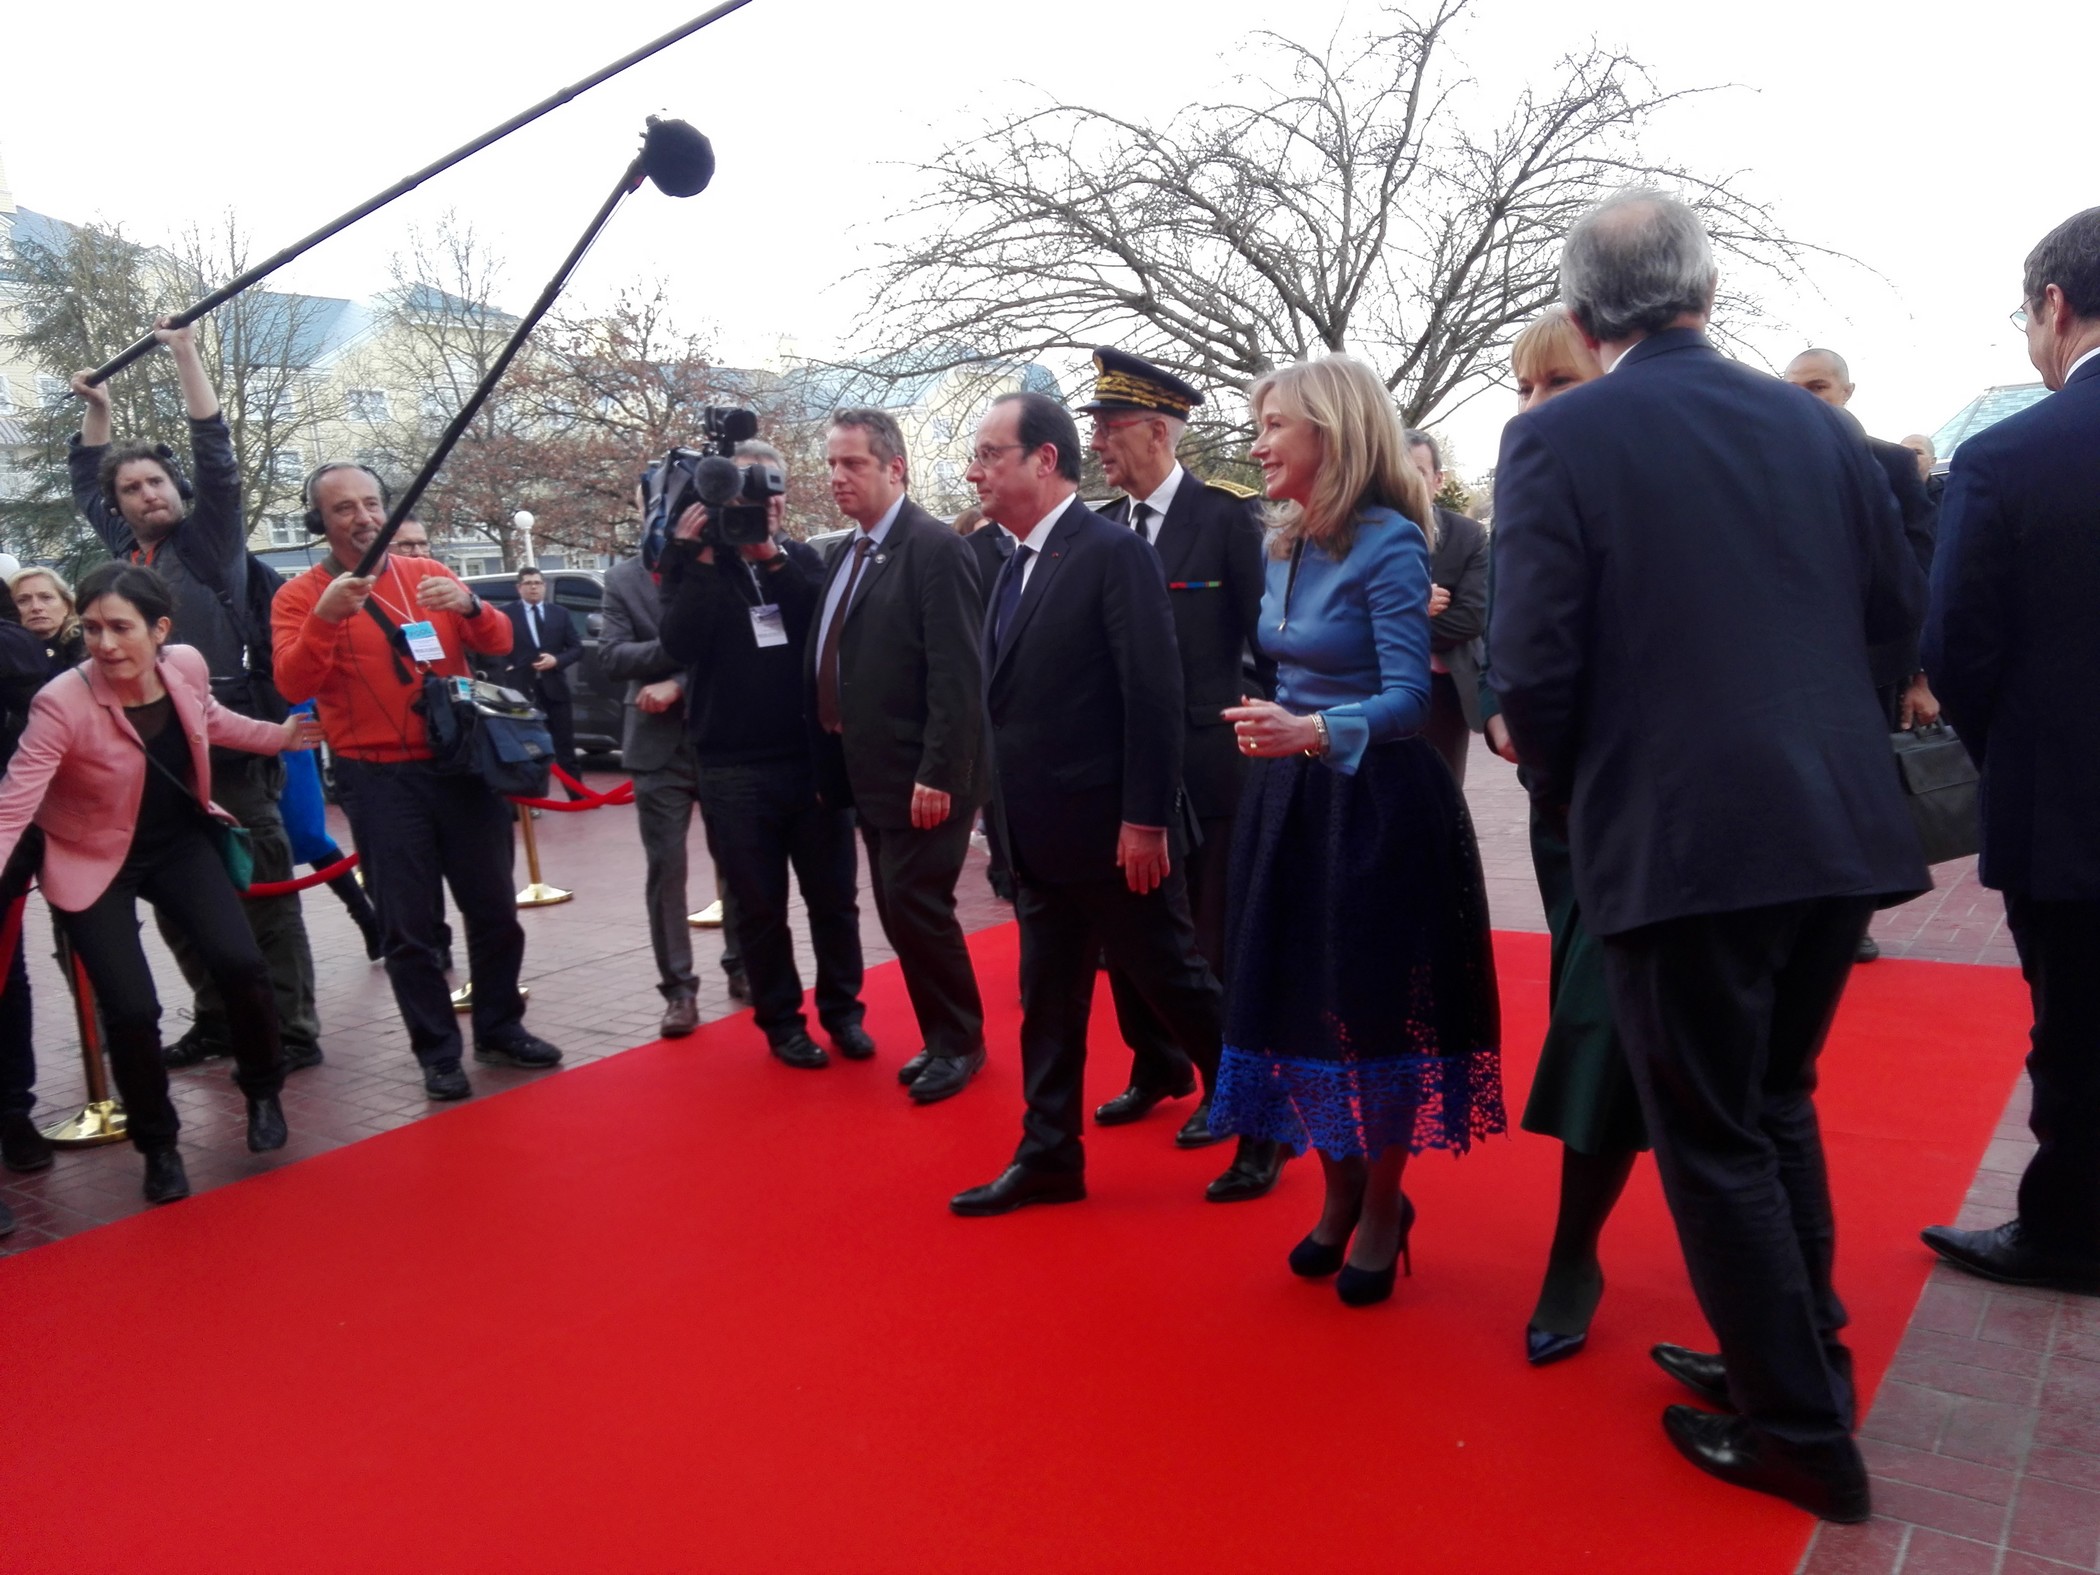 Arrivée de François Hollande à Disneyland Paris, le 25 février 2017